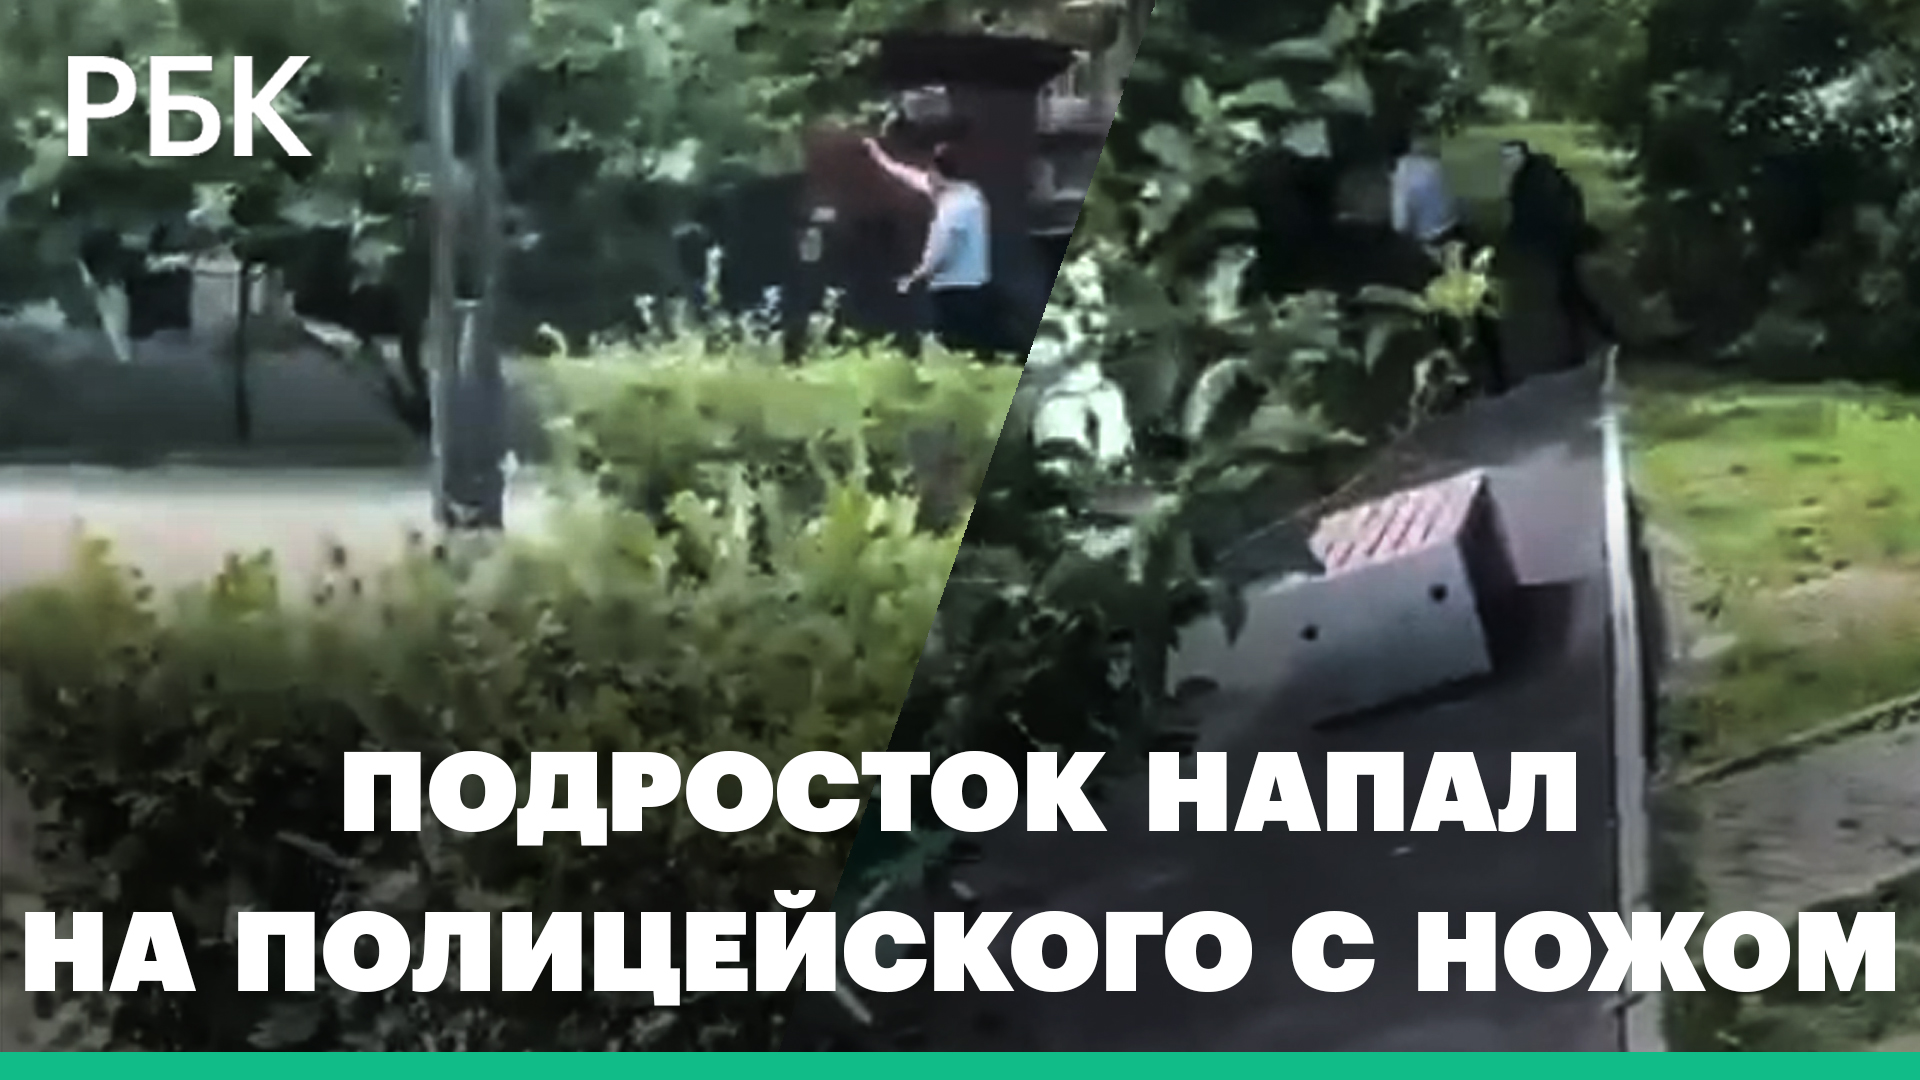 Подросток в маске и с ножом напал на полицейского во Владивостоке. Видео